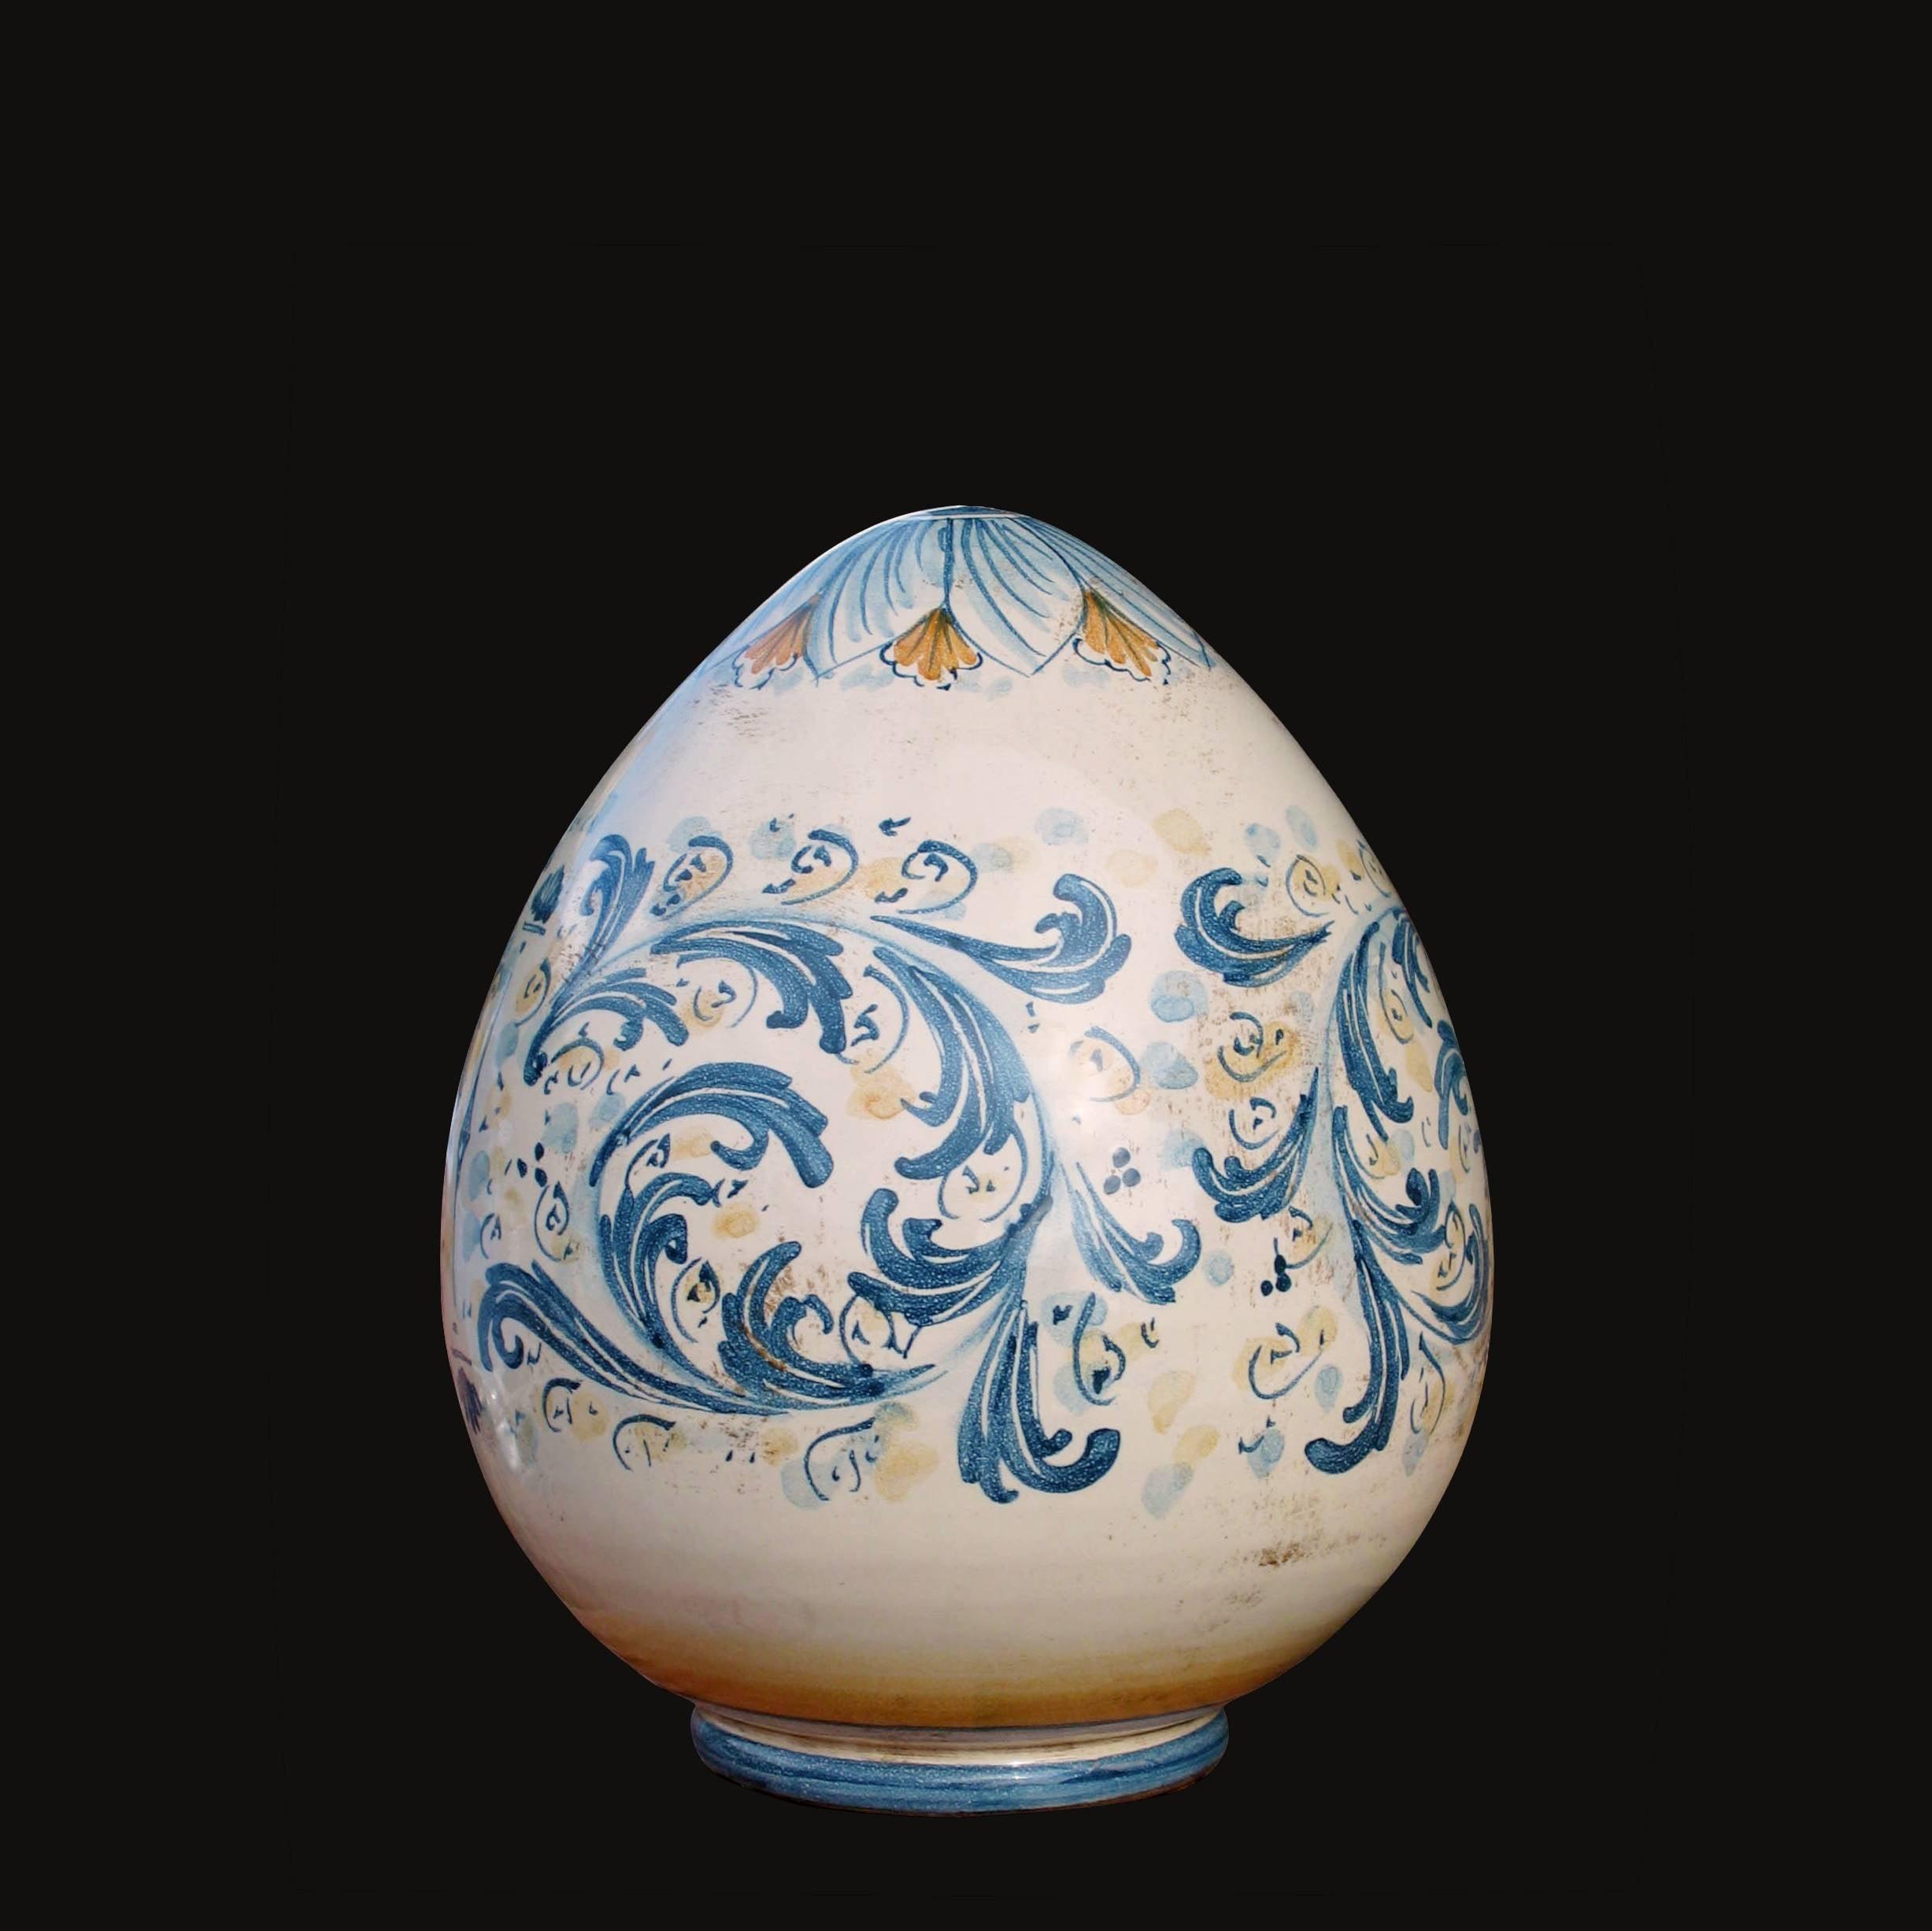 Uovo in ceramica h 15/20 cm Serie d'arte blu e arancio - Ceramiche di Caltagirone - Ceramiche di Caltagirone Sofia